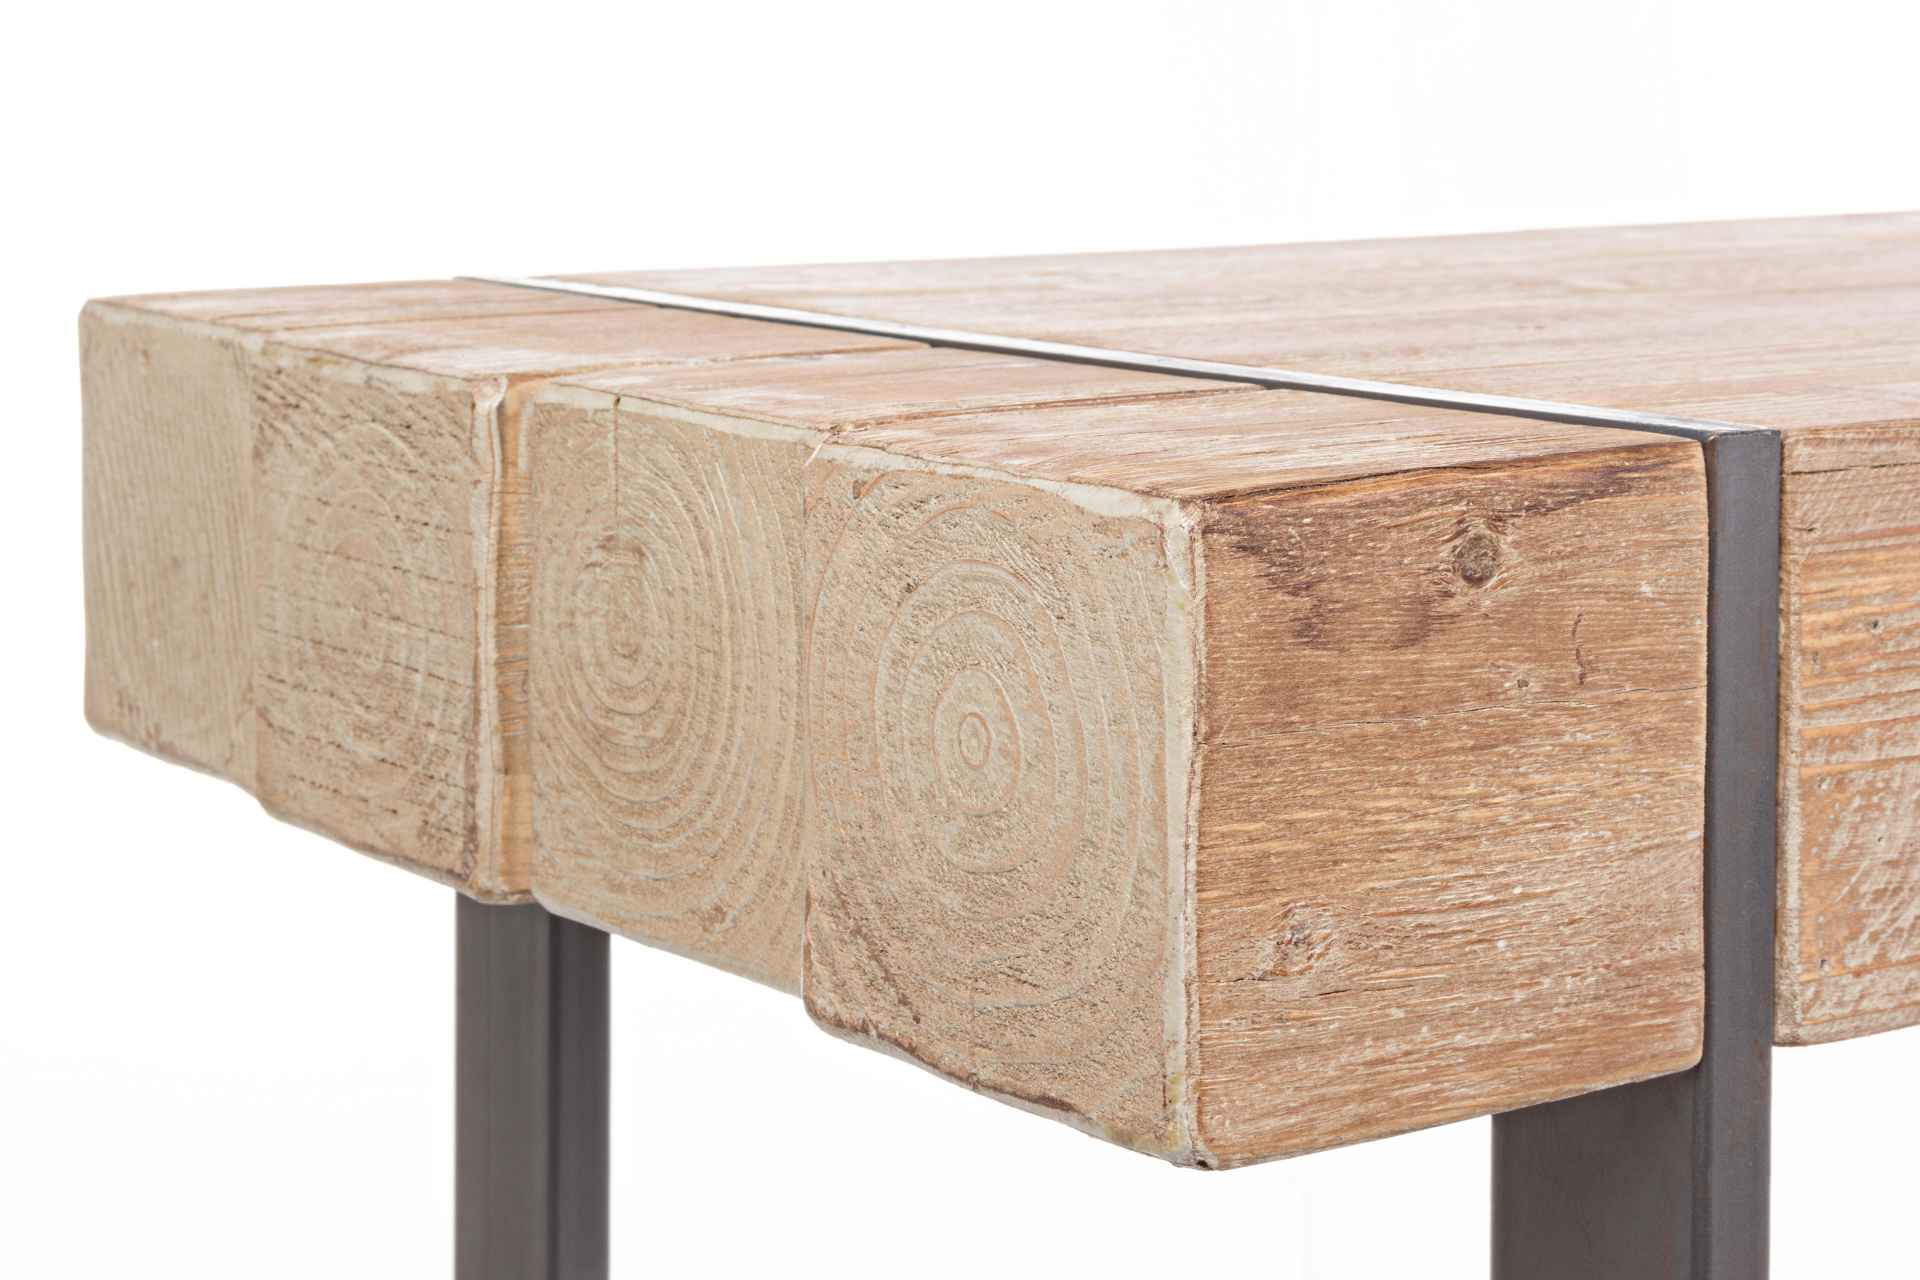 Der Bartisch Gerrett überzeugt mit seinem moderndem Design. Gefertigt wurde er aus Tannenholz, welches einen natürlichen Farbton besitzt. Das Gestell des Tisches ist aus Metall und ist in eine schwarze Farbe. Der Tisch besitzt eine Breite von 200 cm.